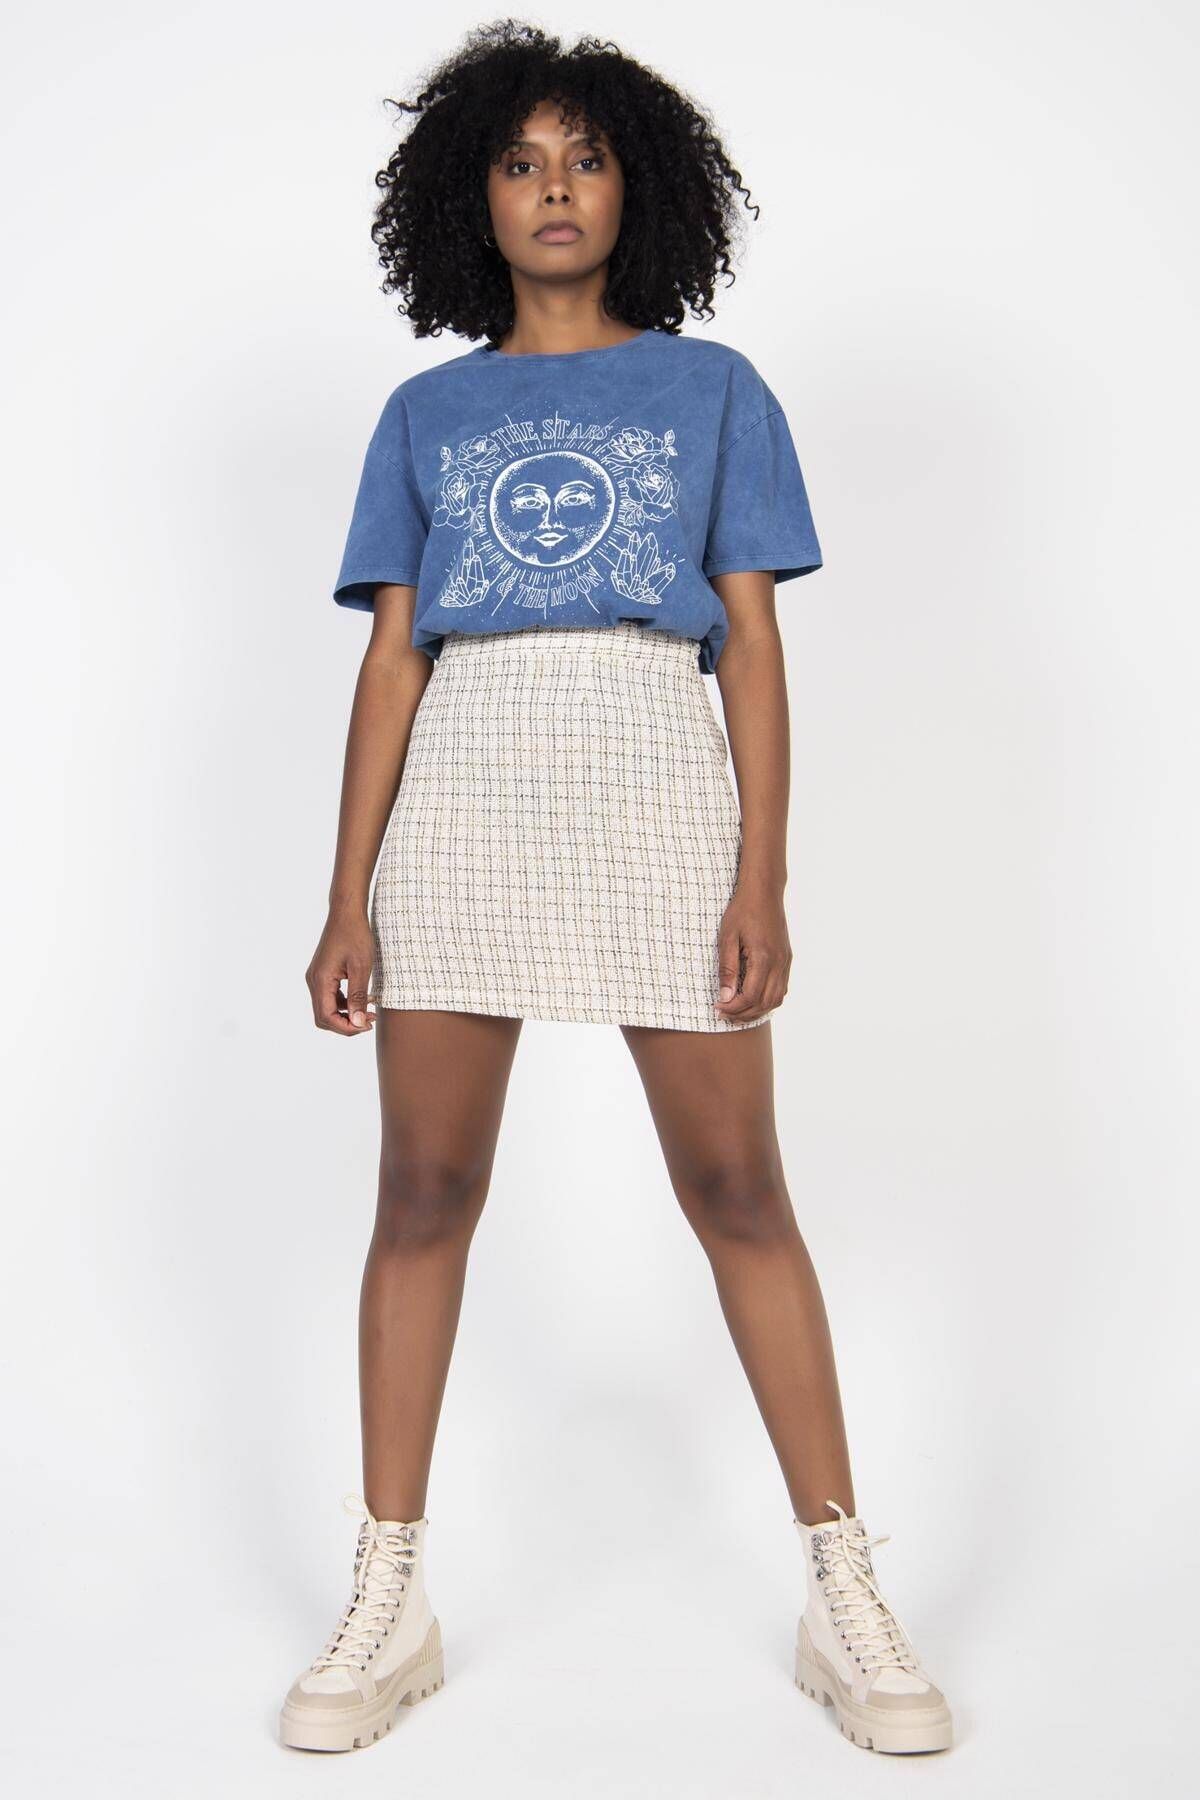 Addax Kadın Mavi Baskılı T-shirt